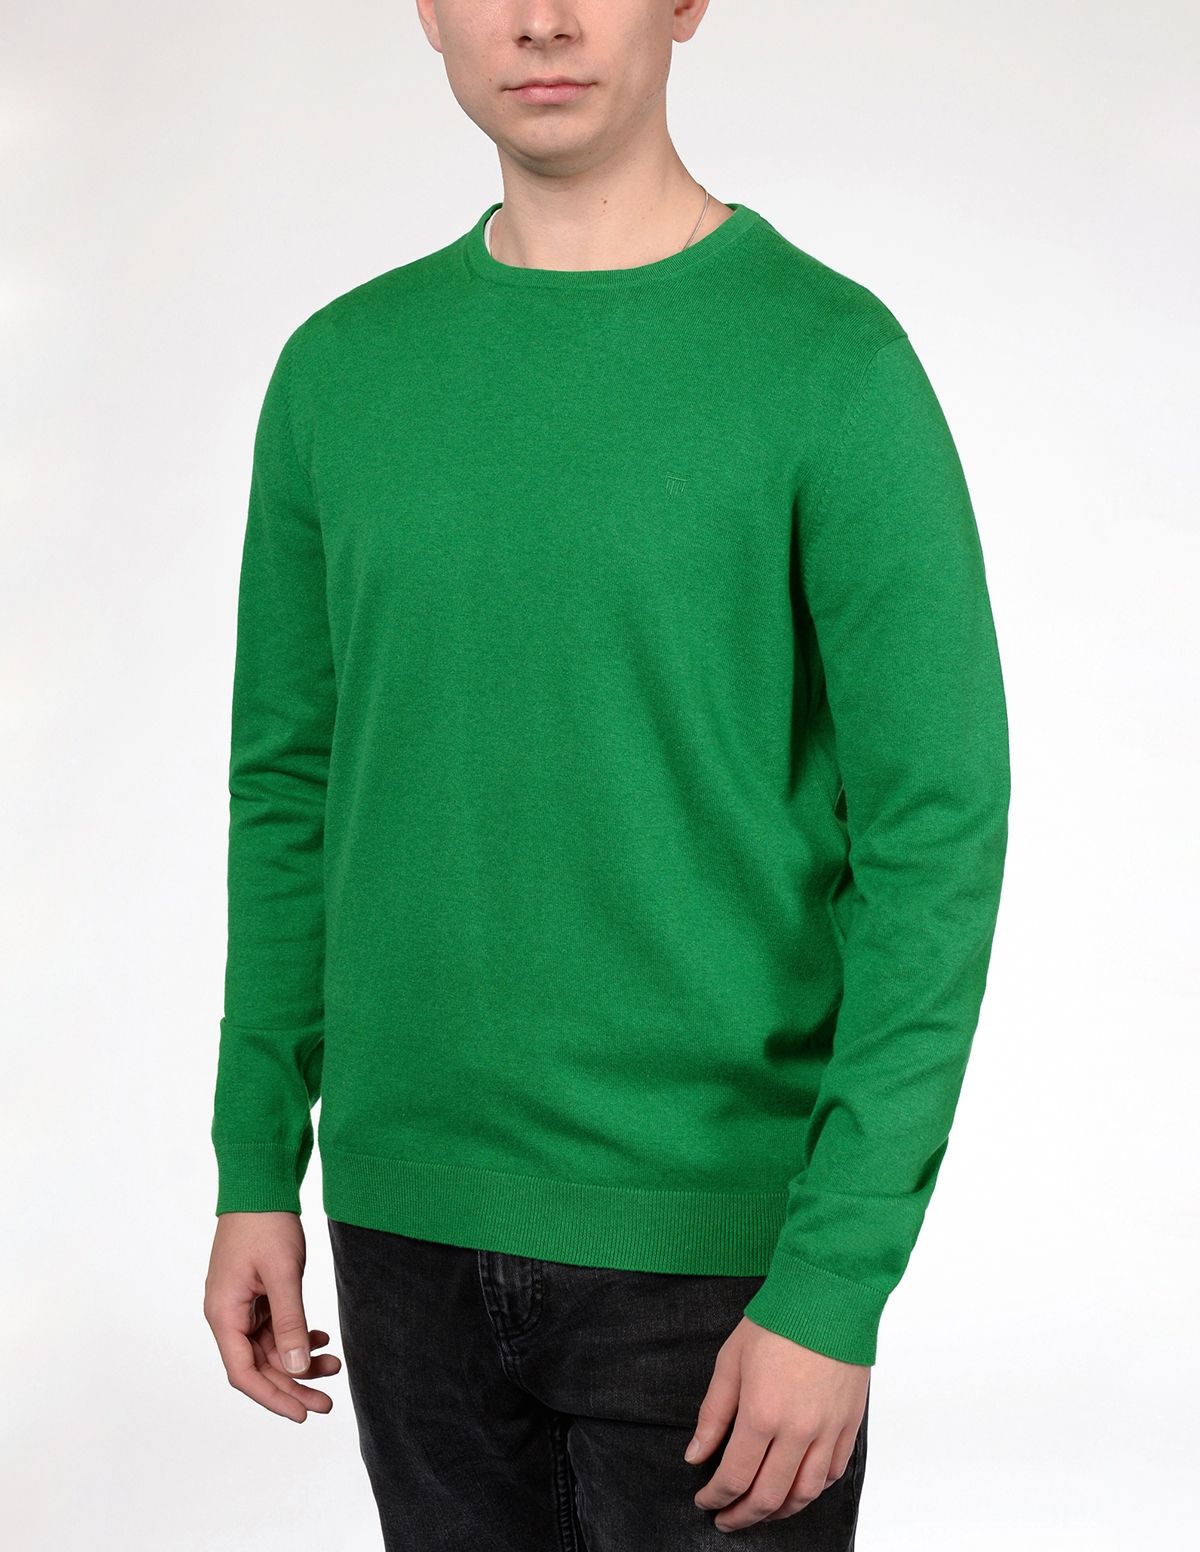 Pullover mit Labelstickerei auf der Brust - Ultra green Melange